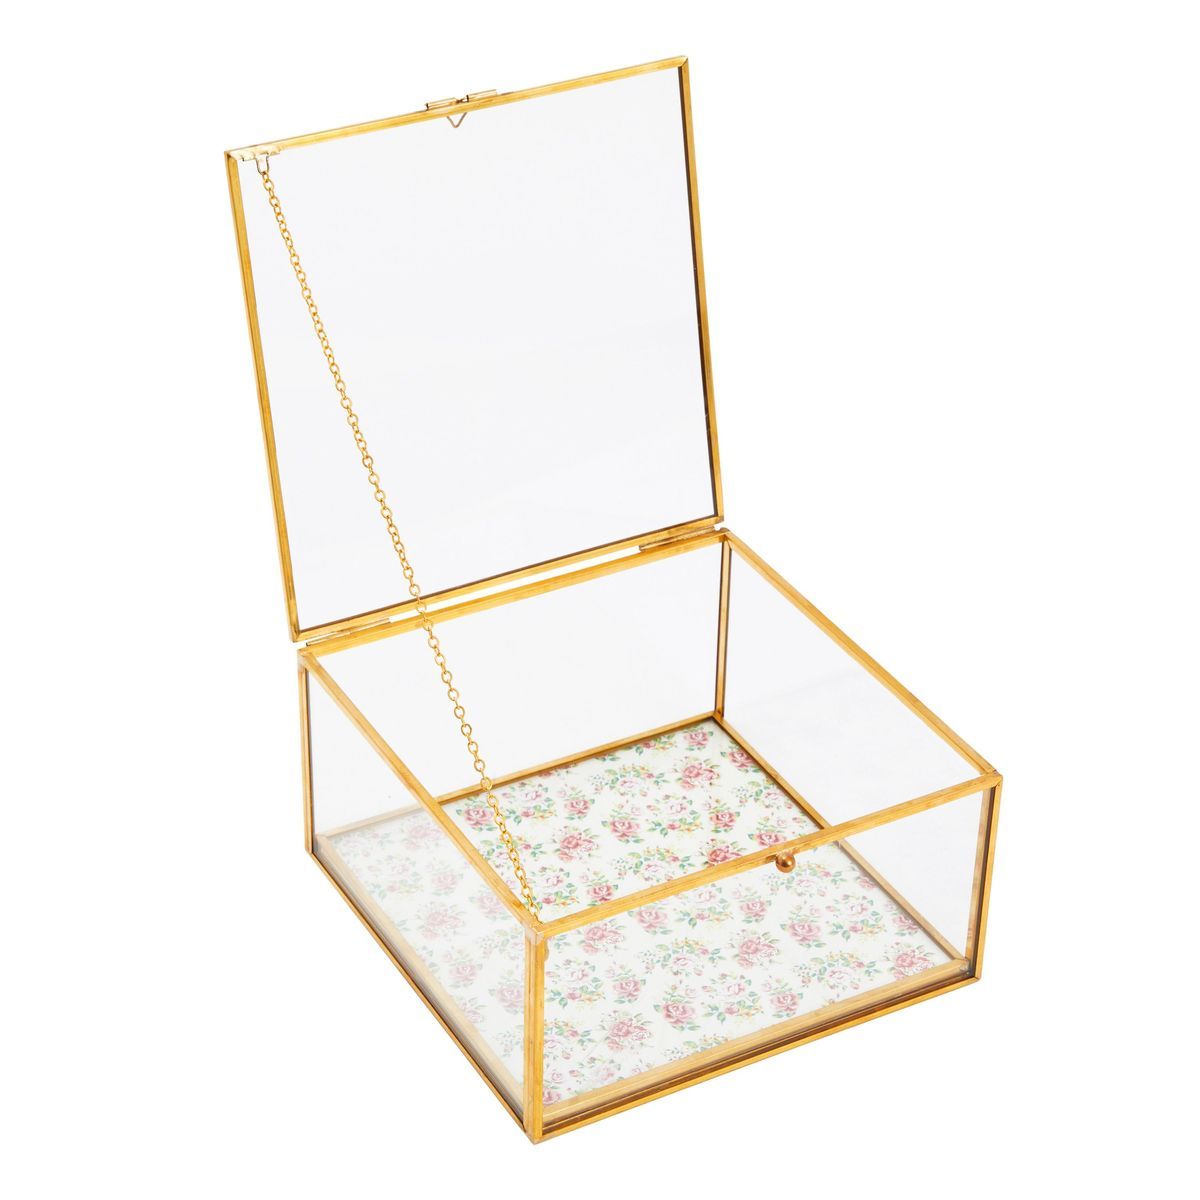 Zodaca Small Glass Jewelry Box for Keepsakes, Jewelry Organizer Storage with Gold Metal Frame, Hi... | Target